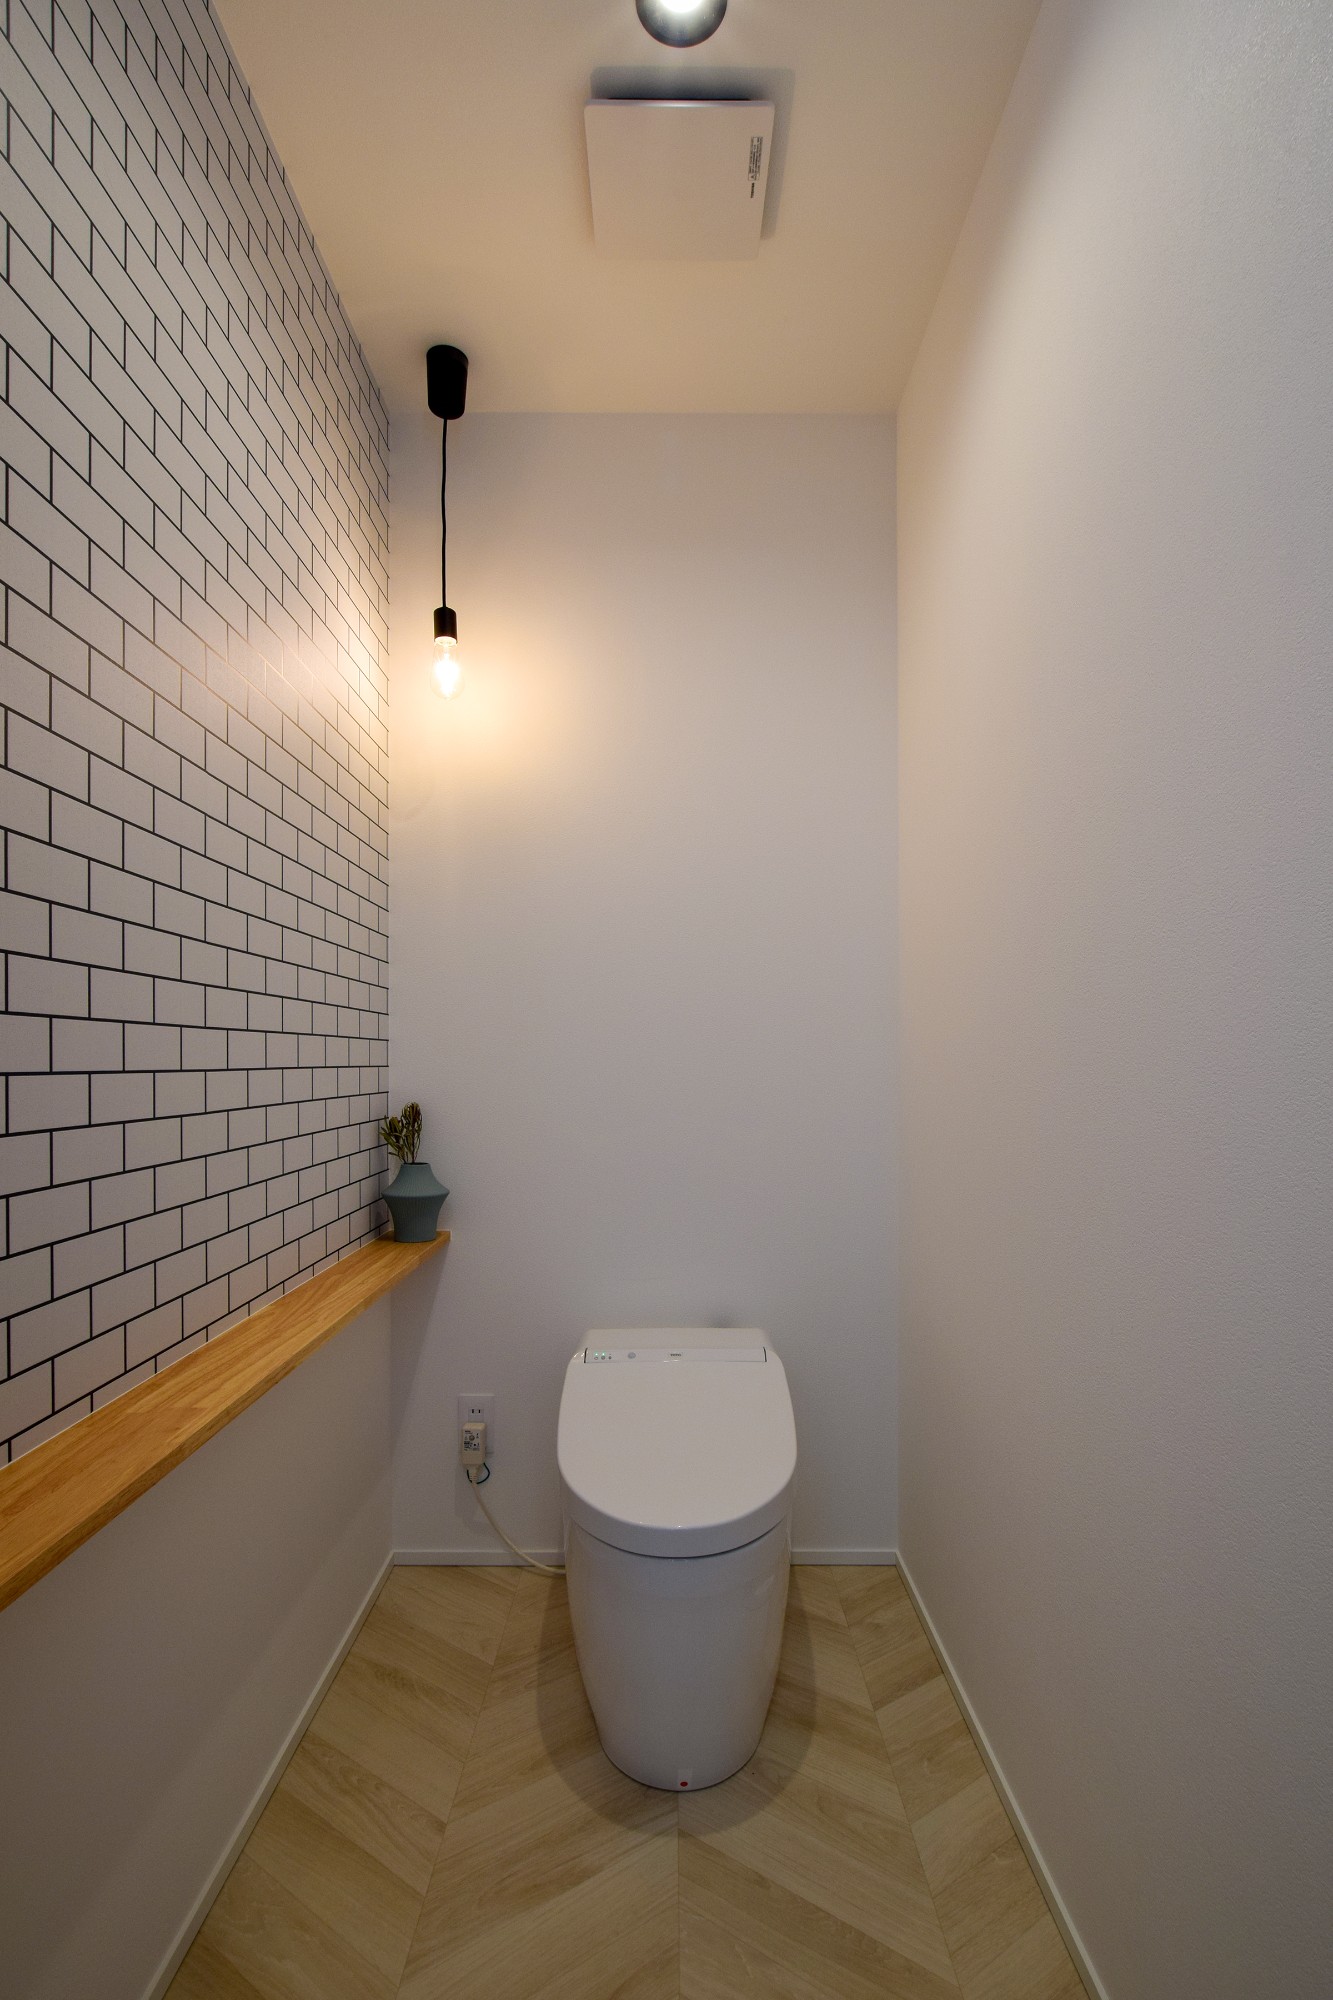 タイル調のアクセントクロスと、ヘリンボーンの組み合わせでカントリーな雰囲気のトイレ空間。ペンダントライト照明がいい雰囲気を醸し出す